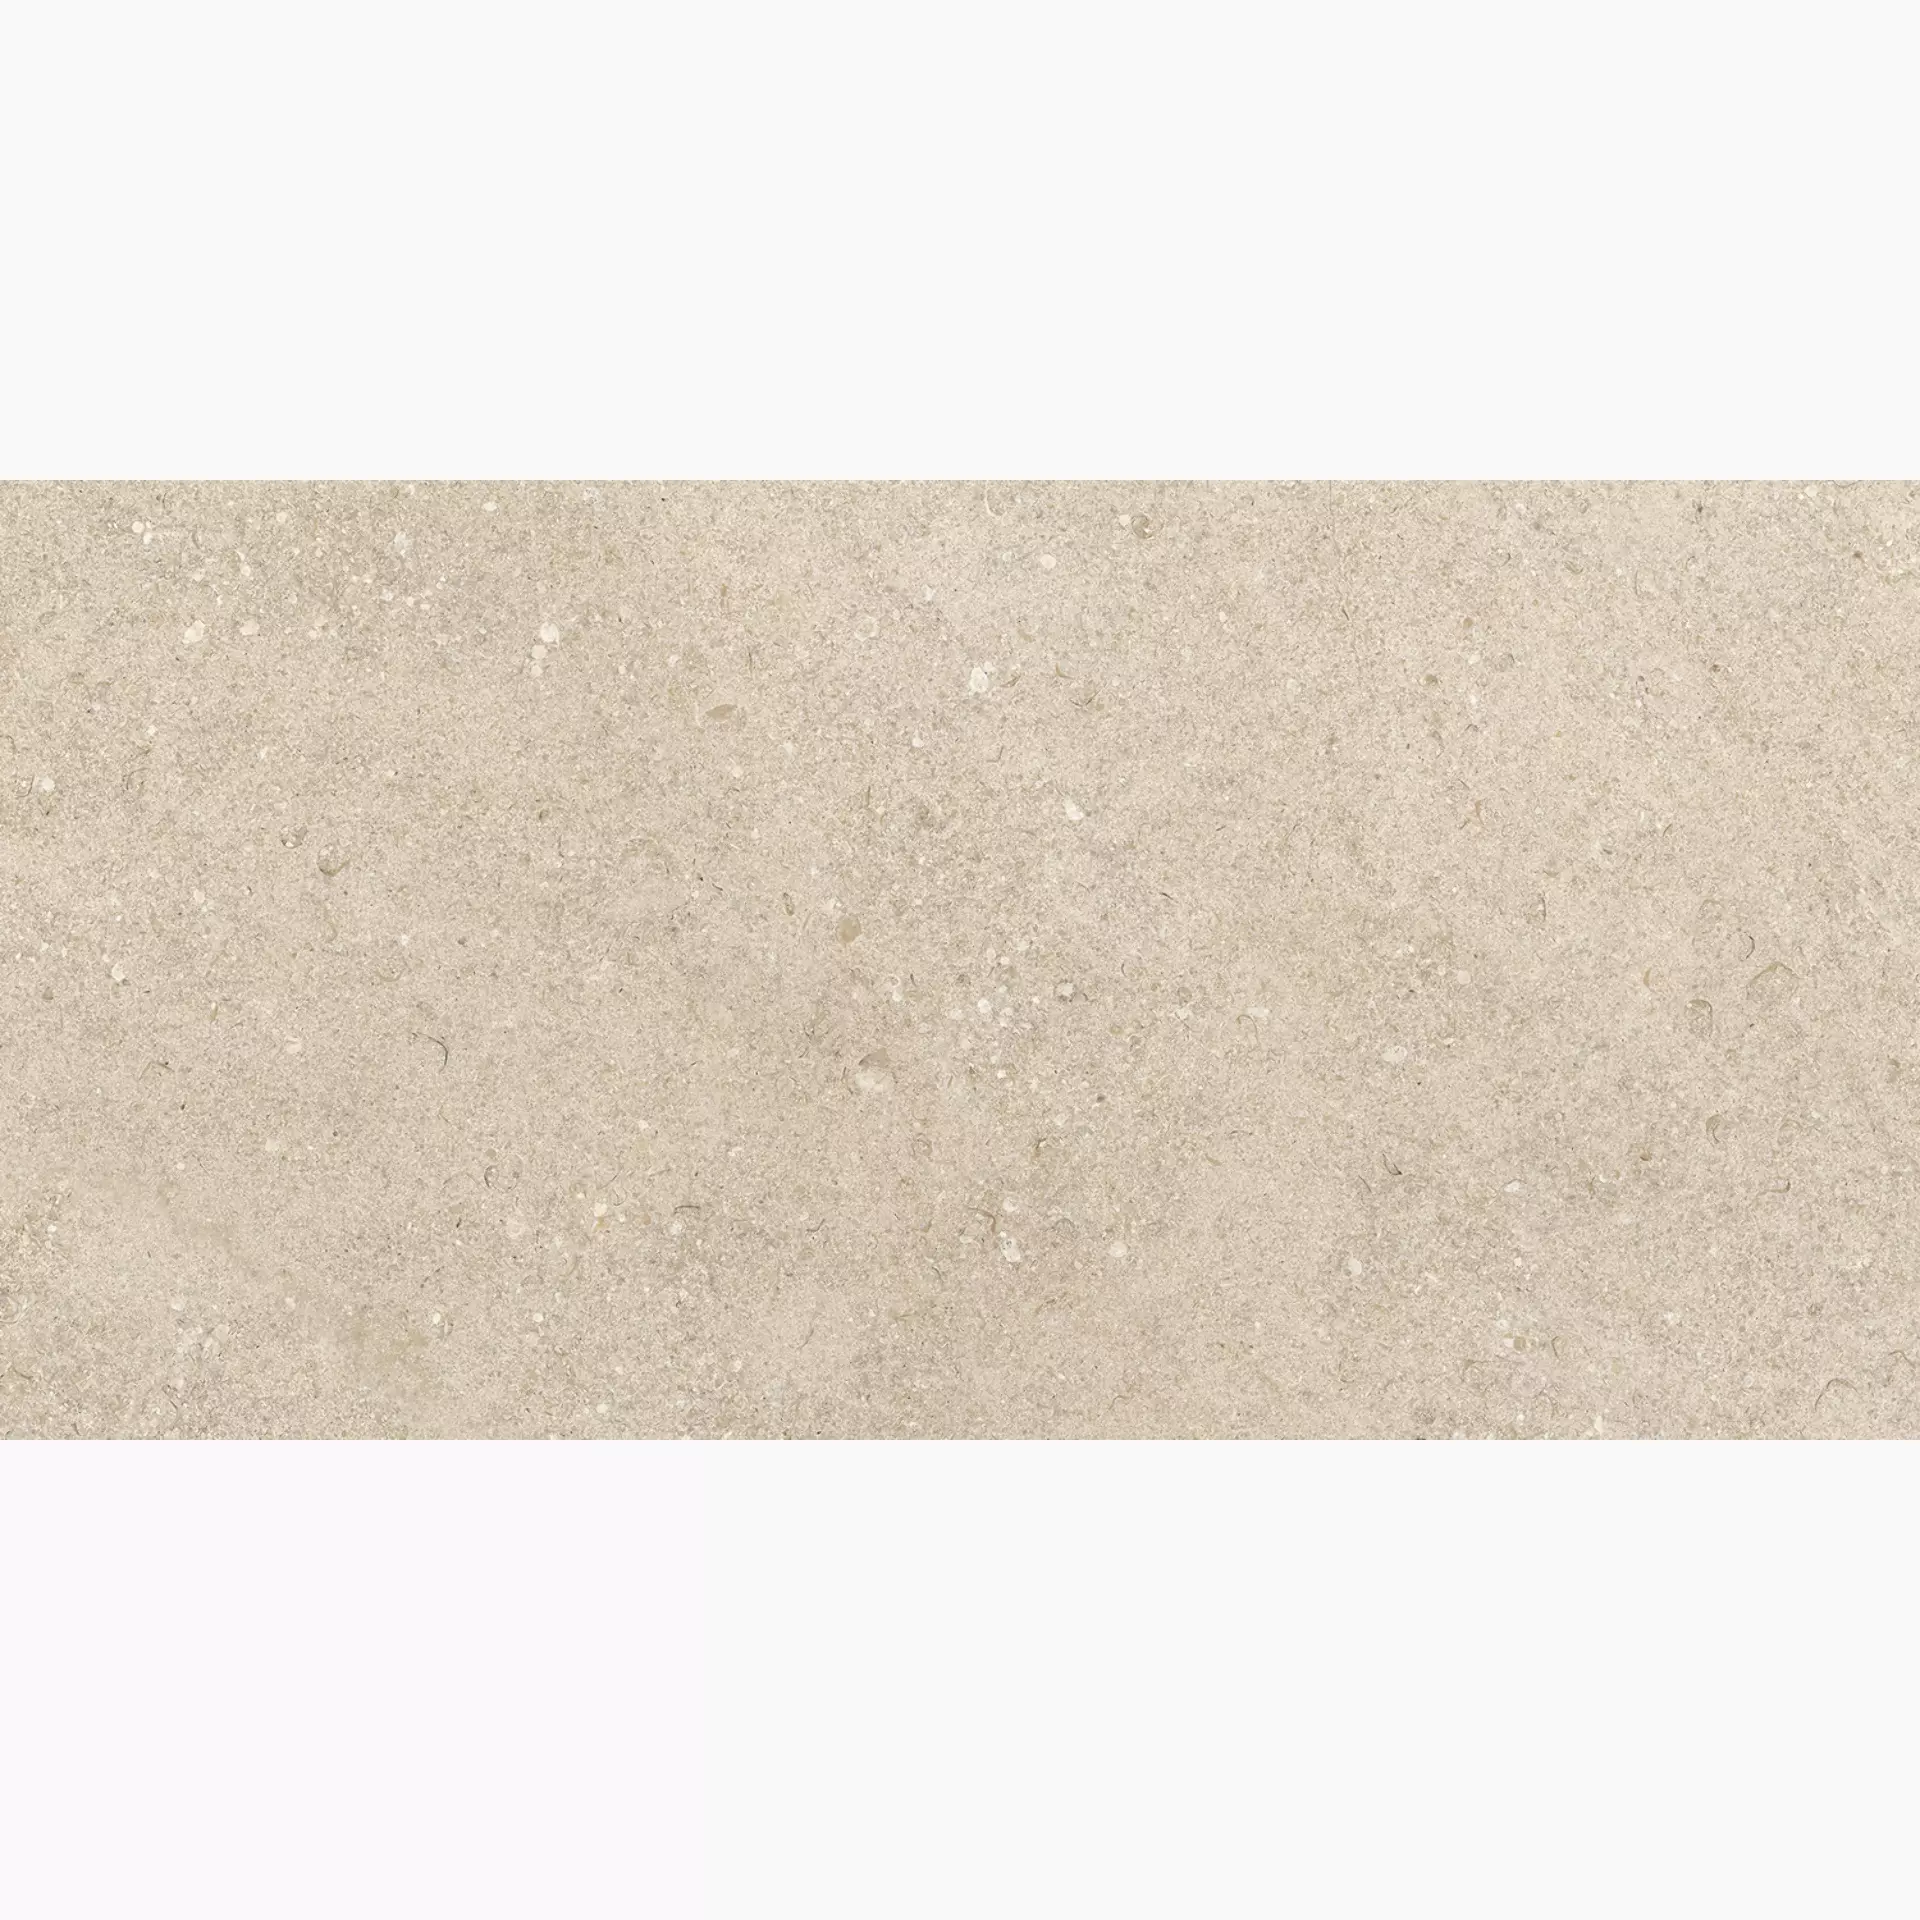 Ragno Kalkstone Sand Strutturato RAJQ strutturato rectified 9,5mm